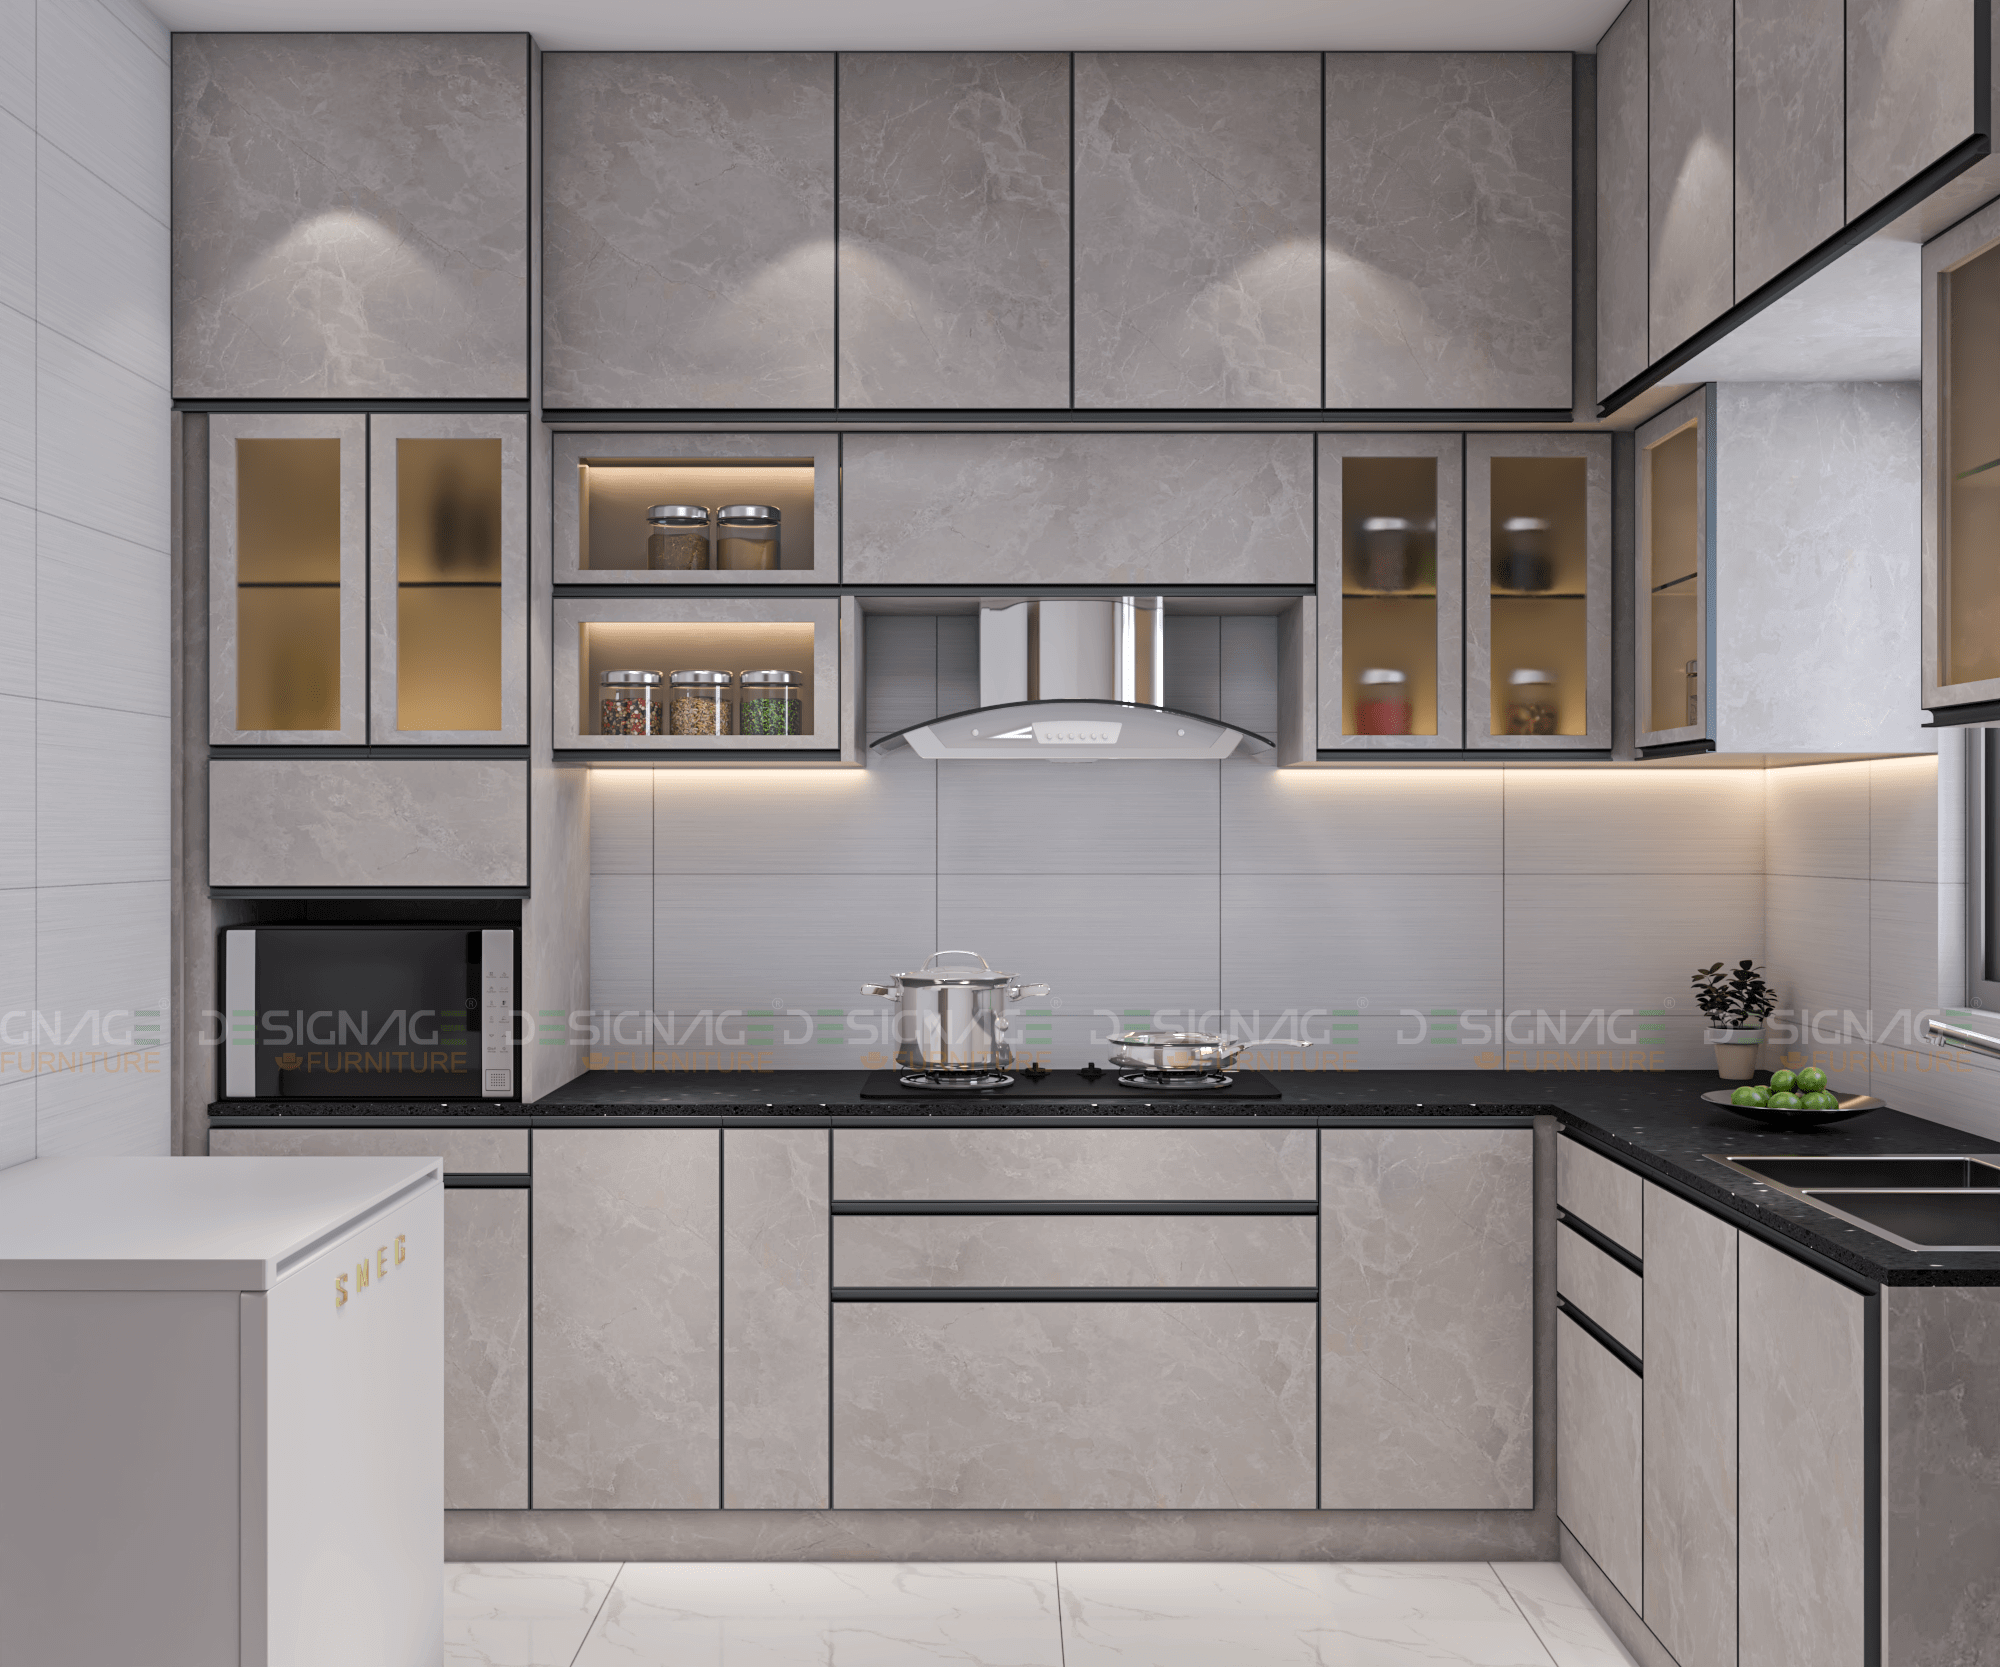 Home interior kitchen cabinet designs DesignAge